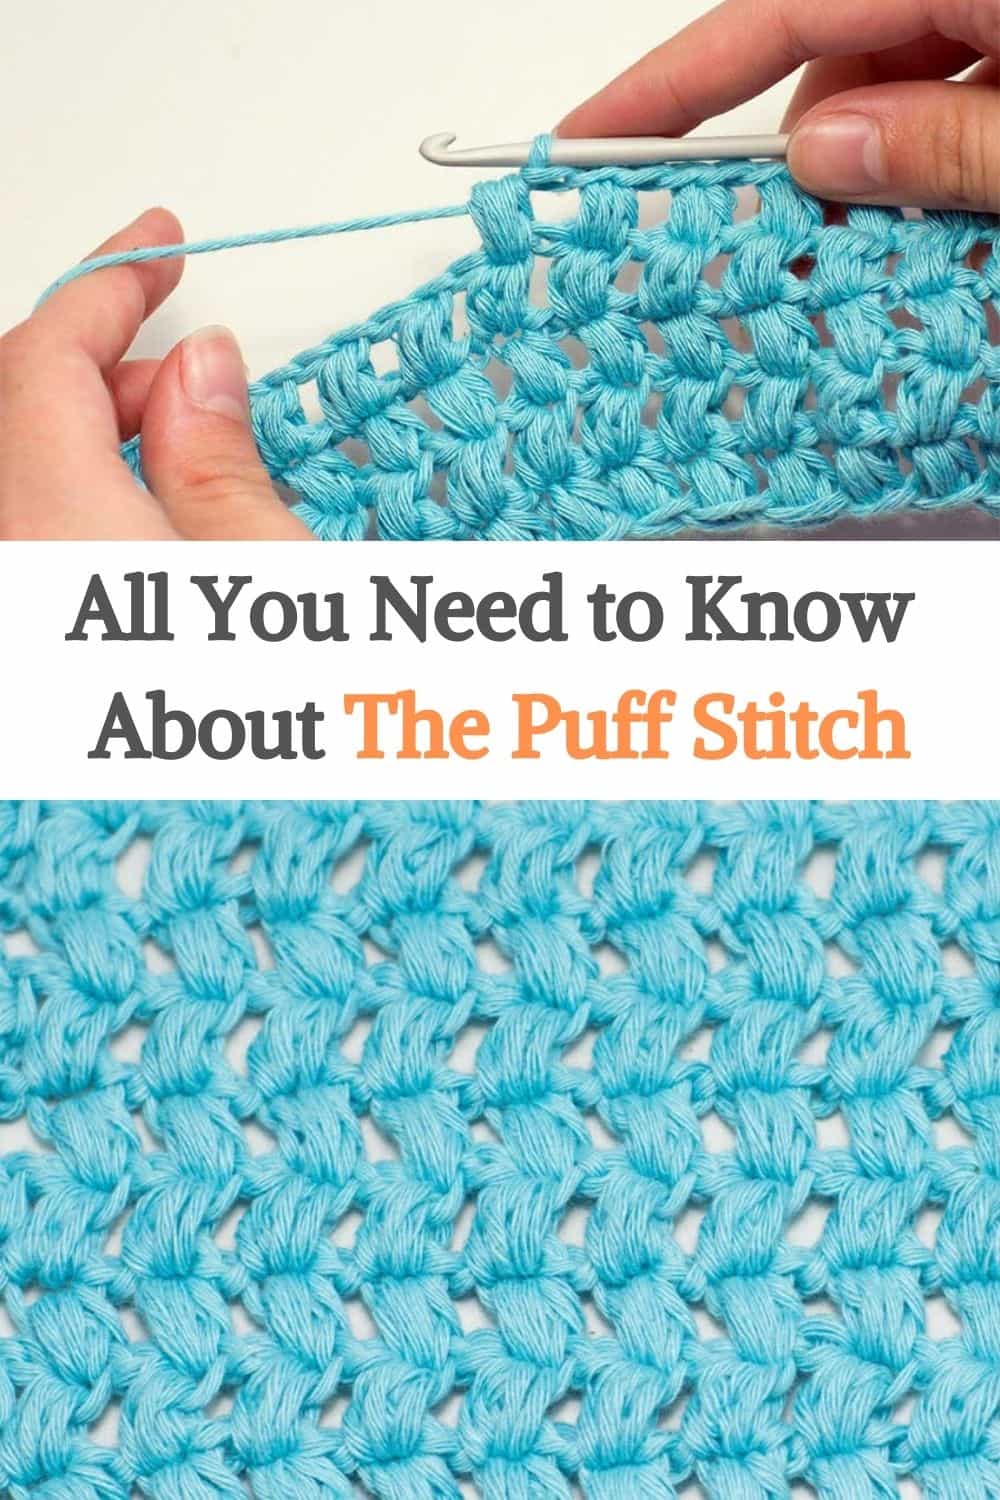 the Puff Stitch